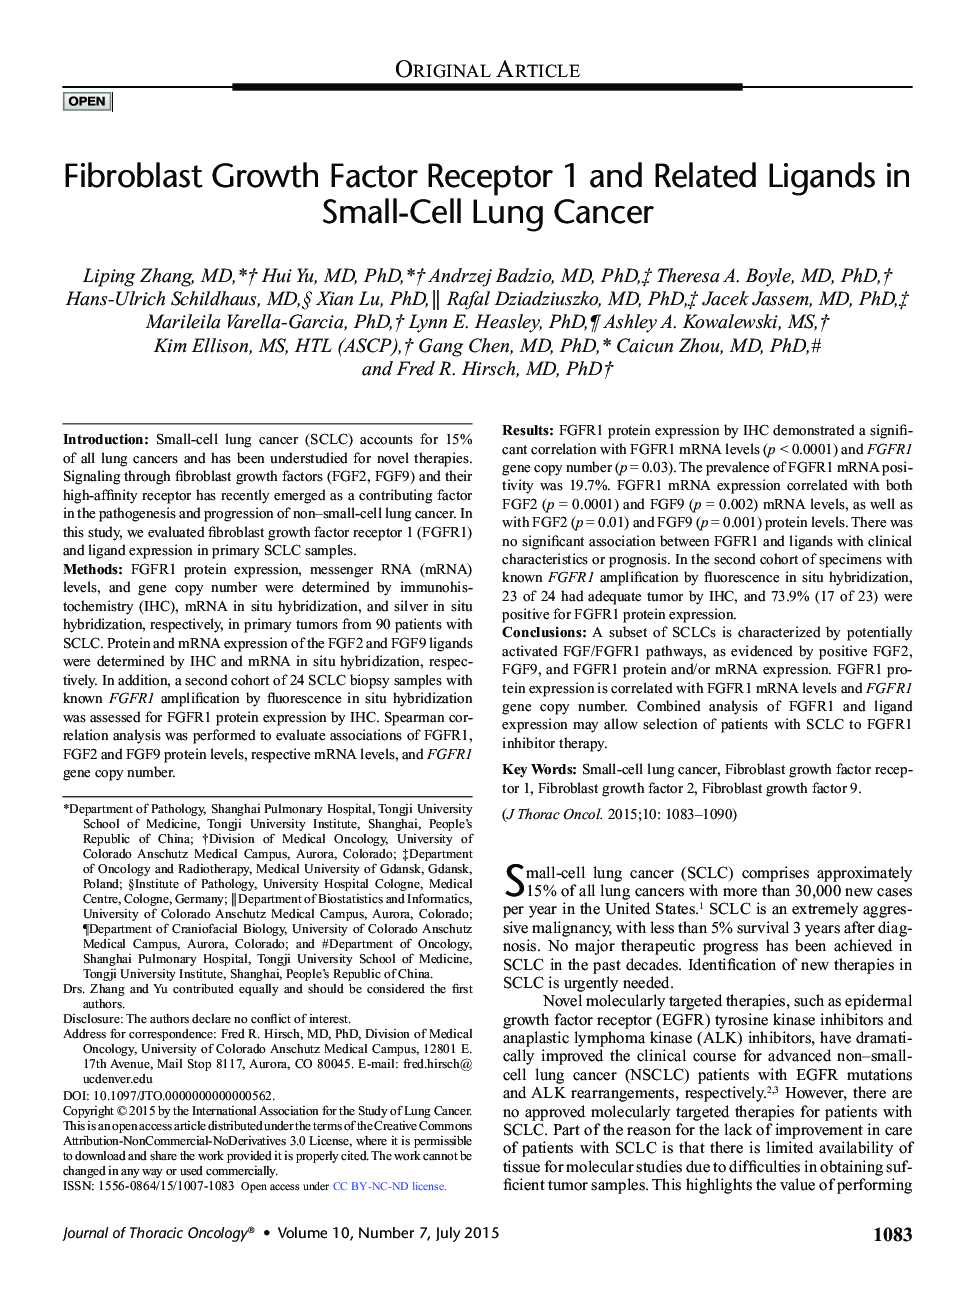 گیرنده فاکتور رشد فیبروبلاستی 1 و لیگاندهای مرتبط در سرطان ریه های کوچک سلولی 